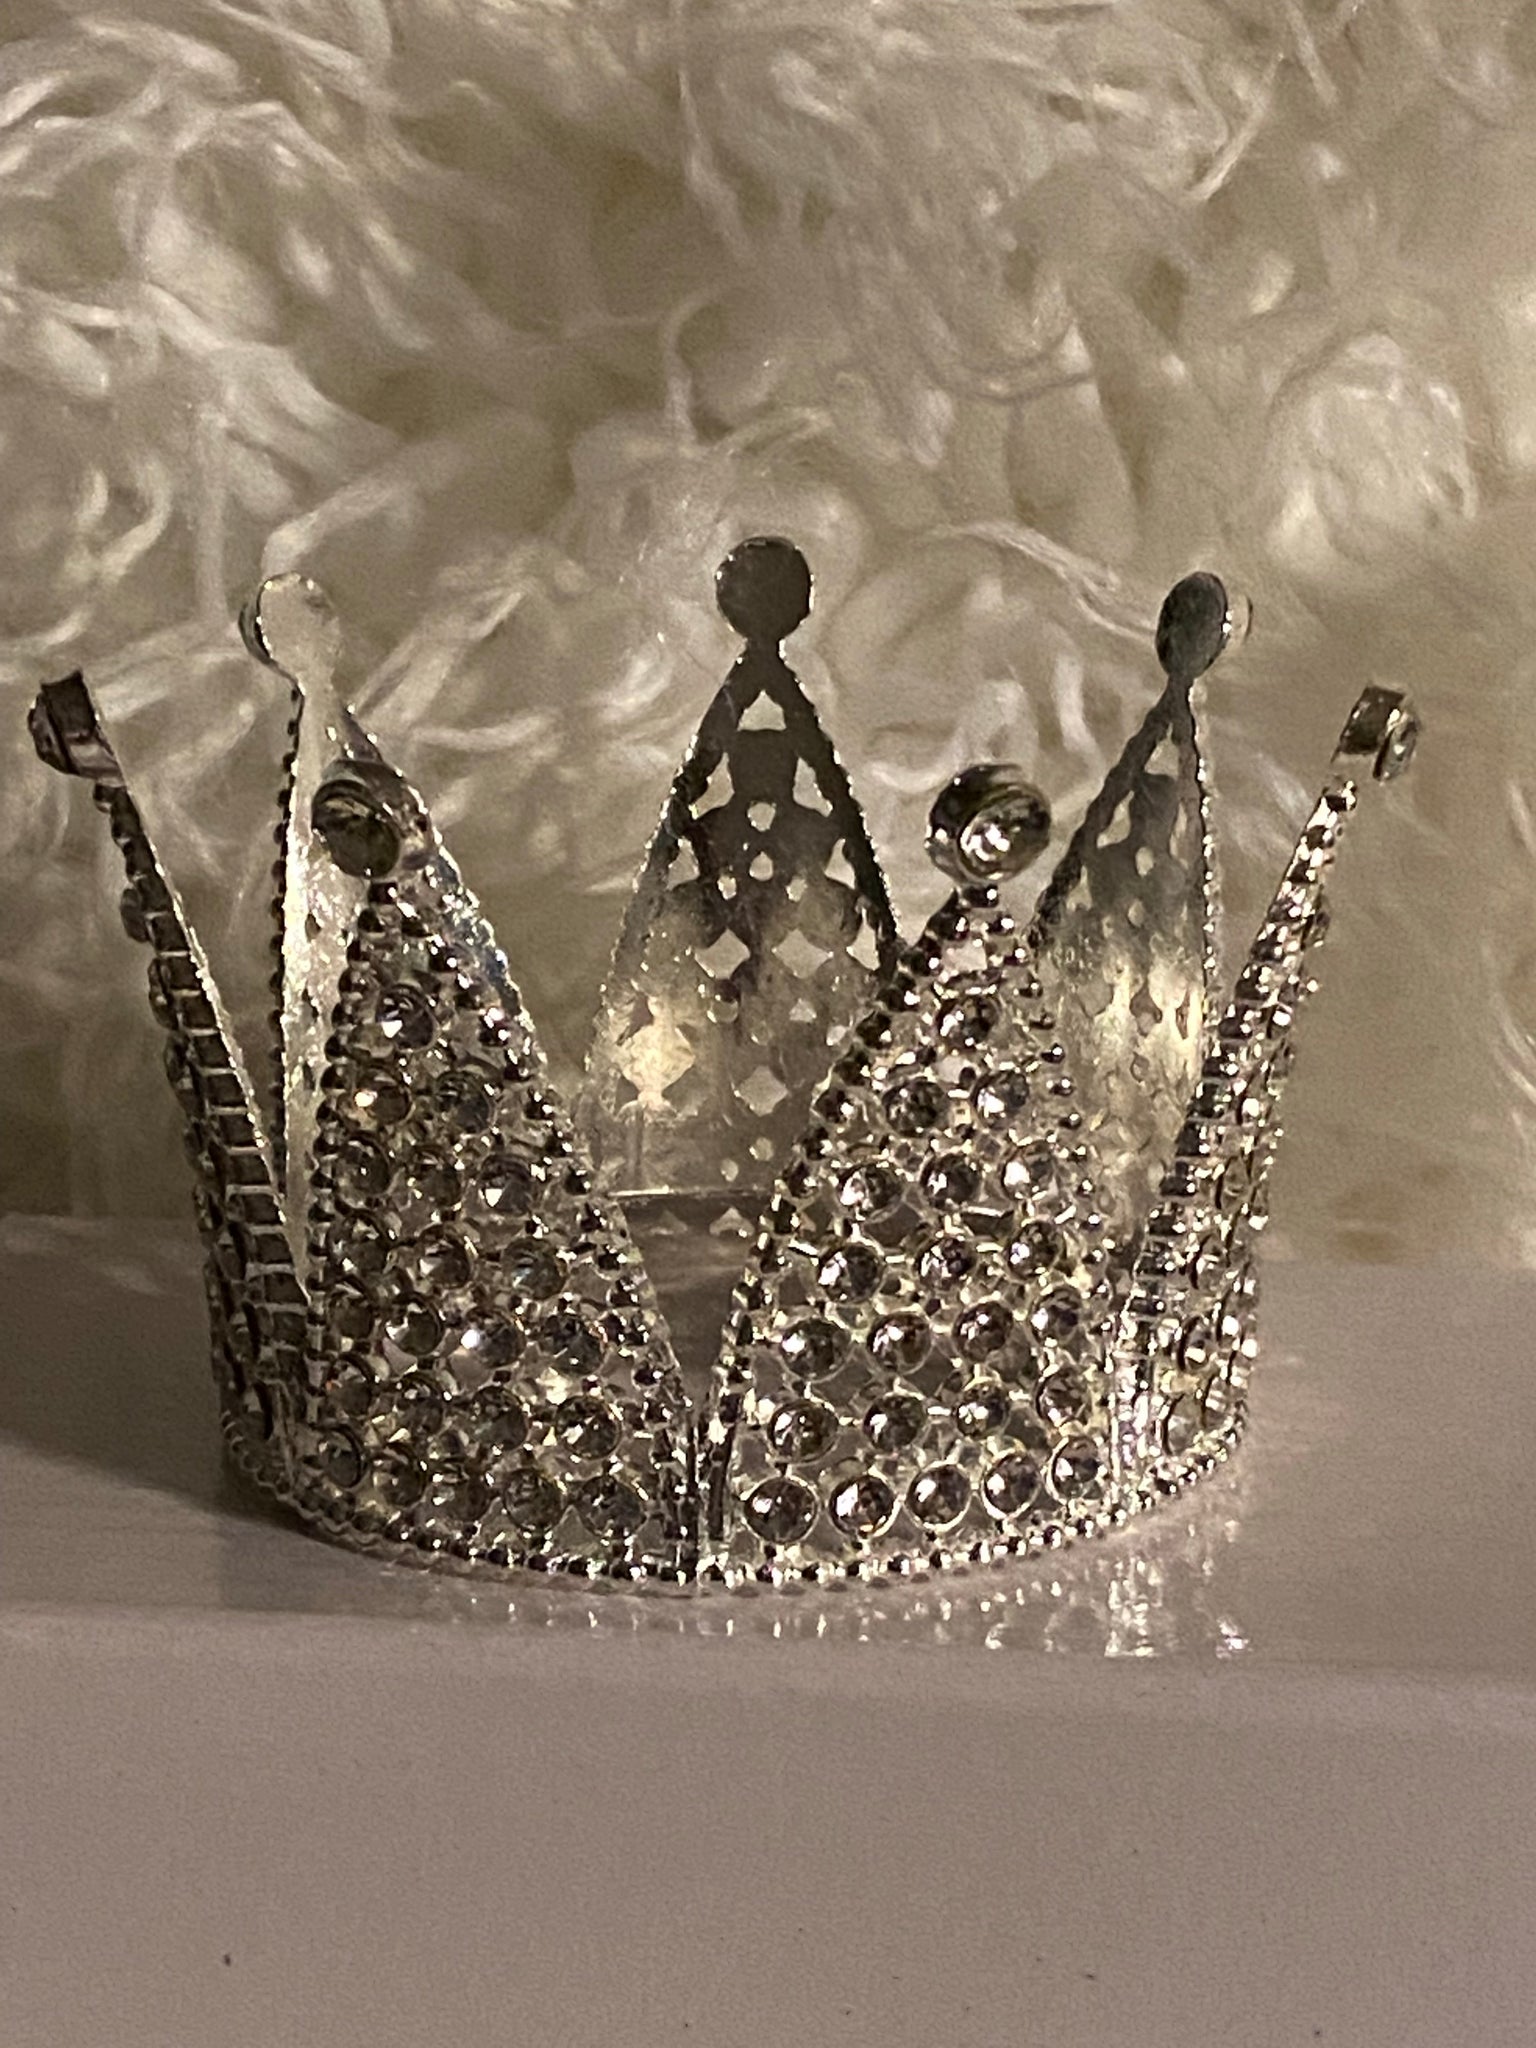 queen crown tumblr